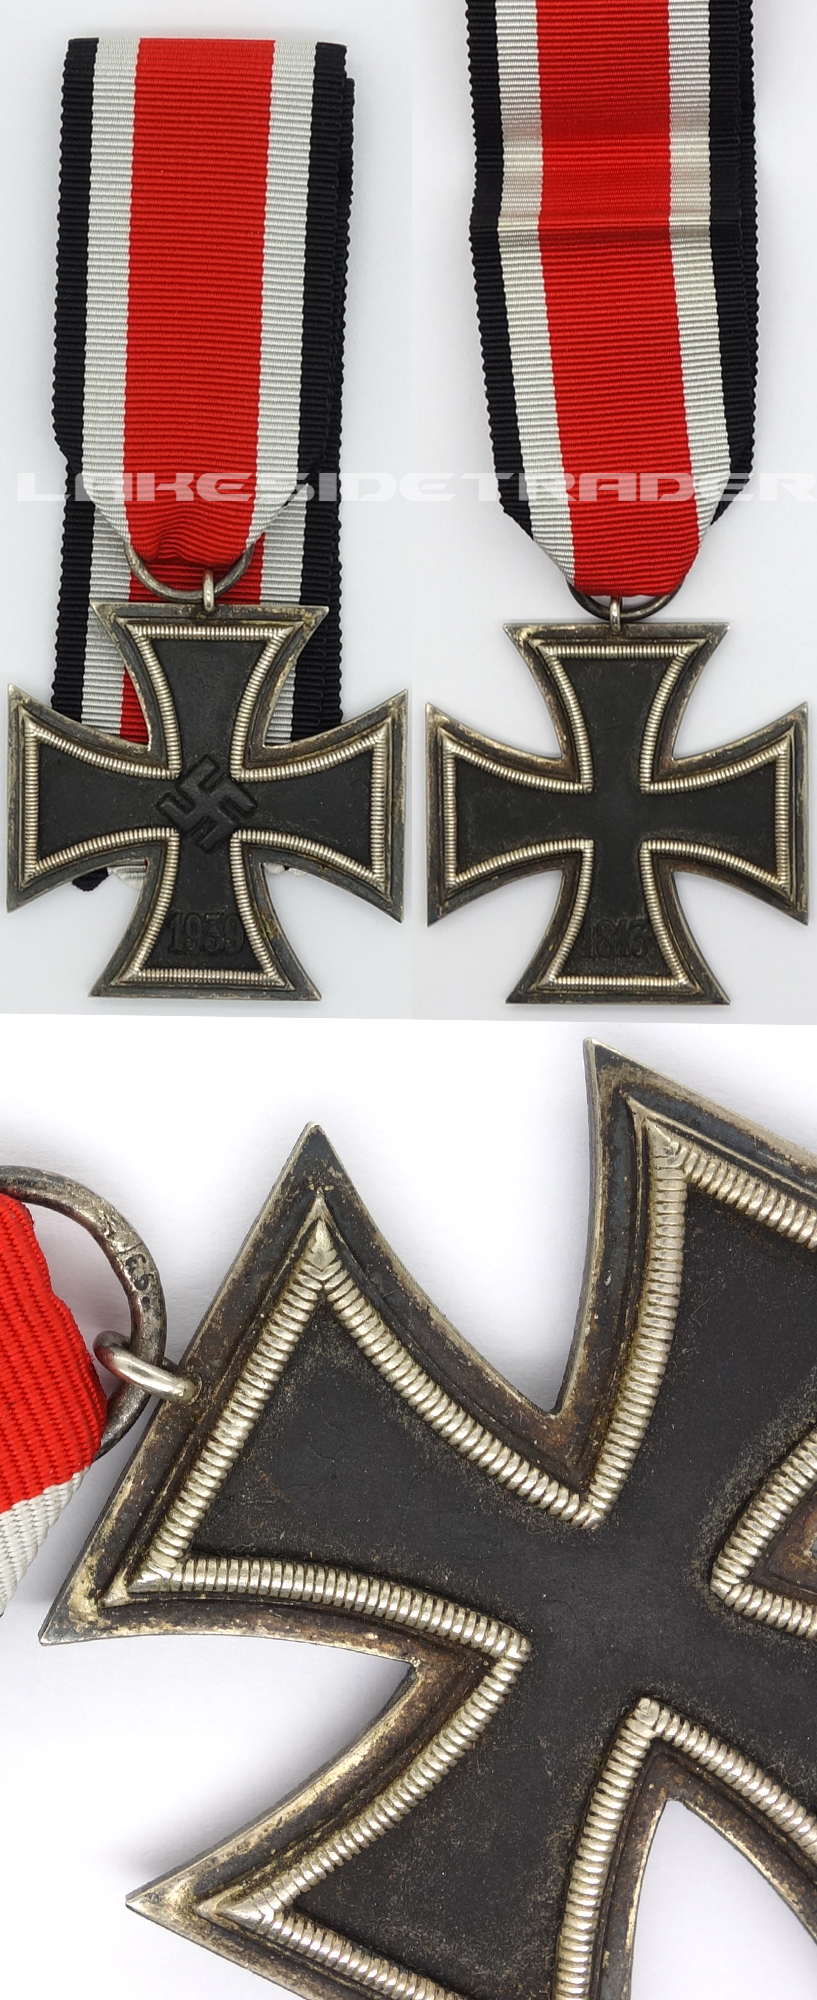 2nd Class Iron Cross by 66-Freidrich Keller 